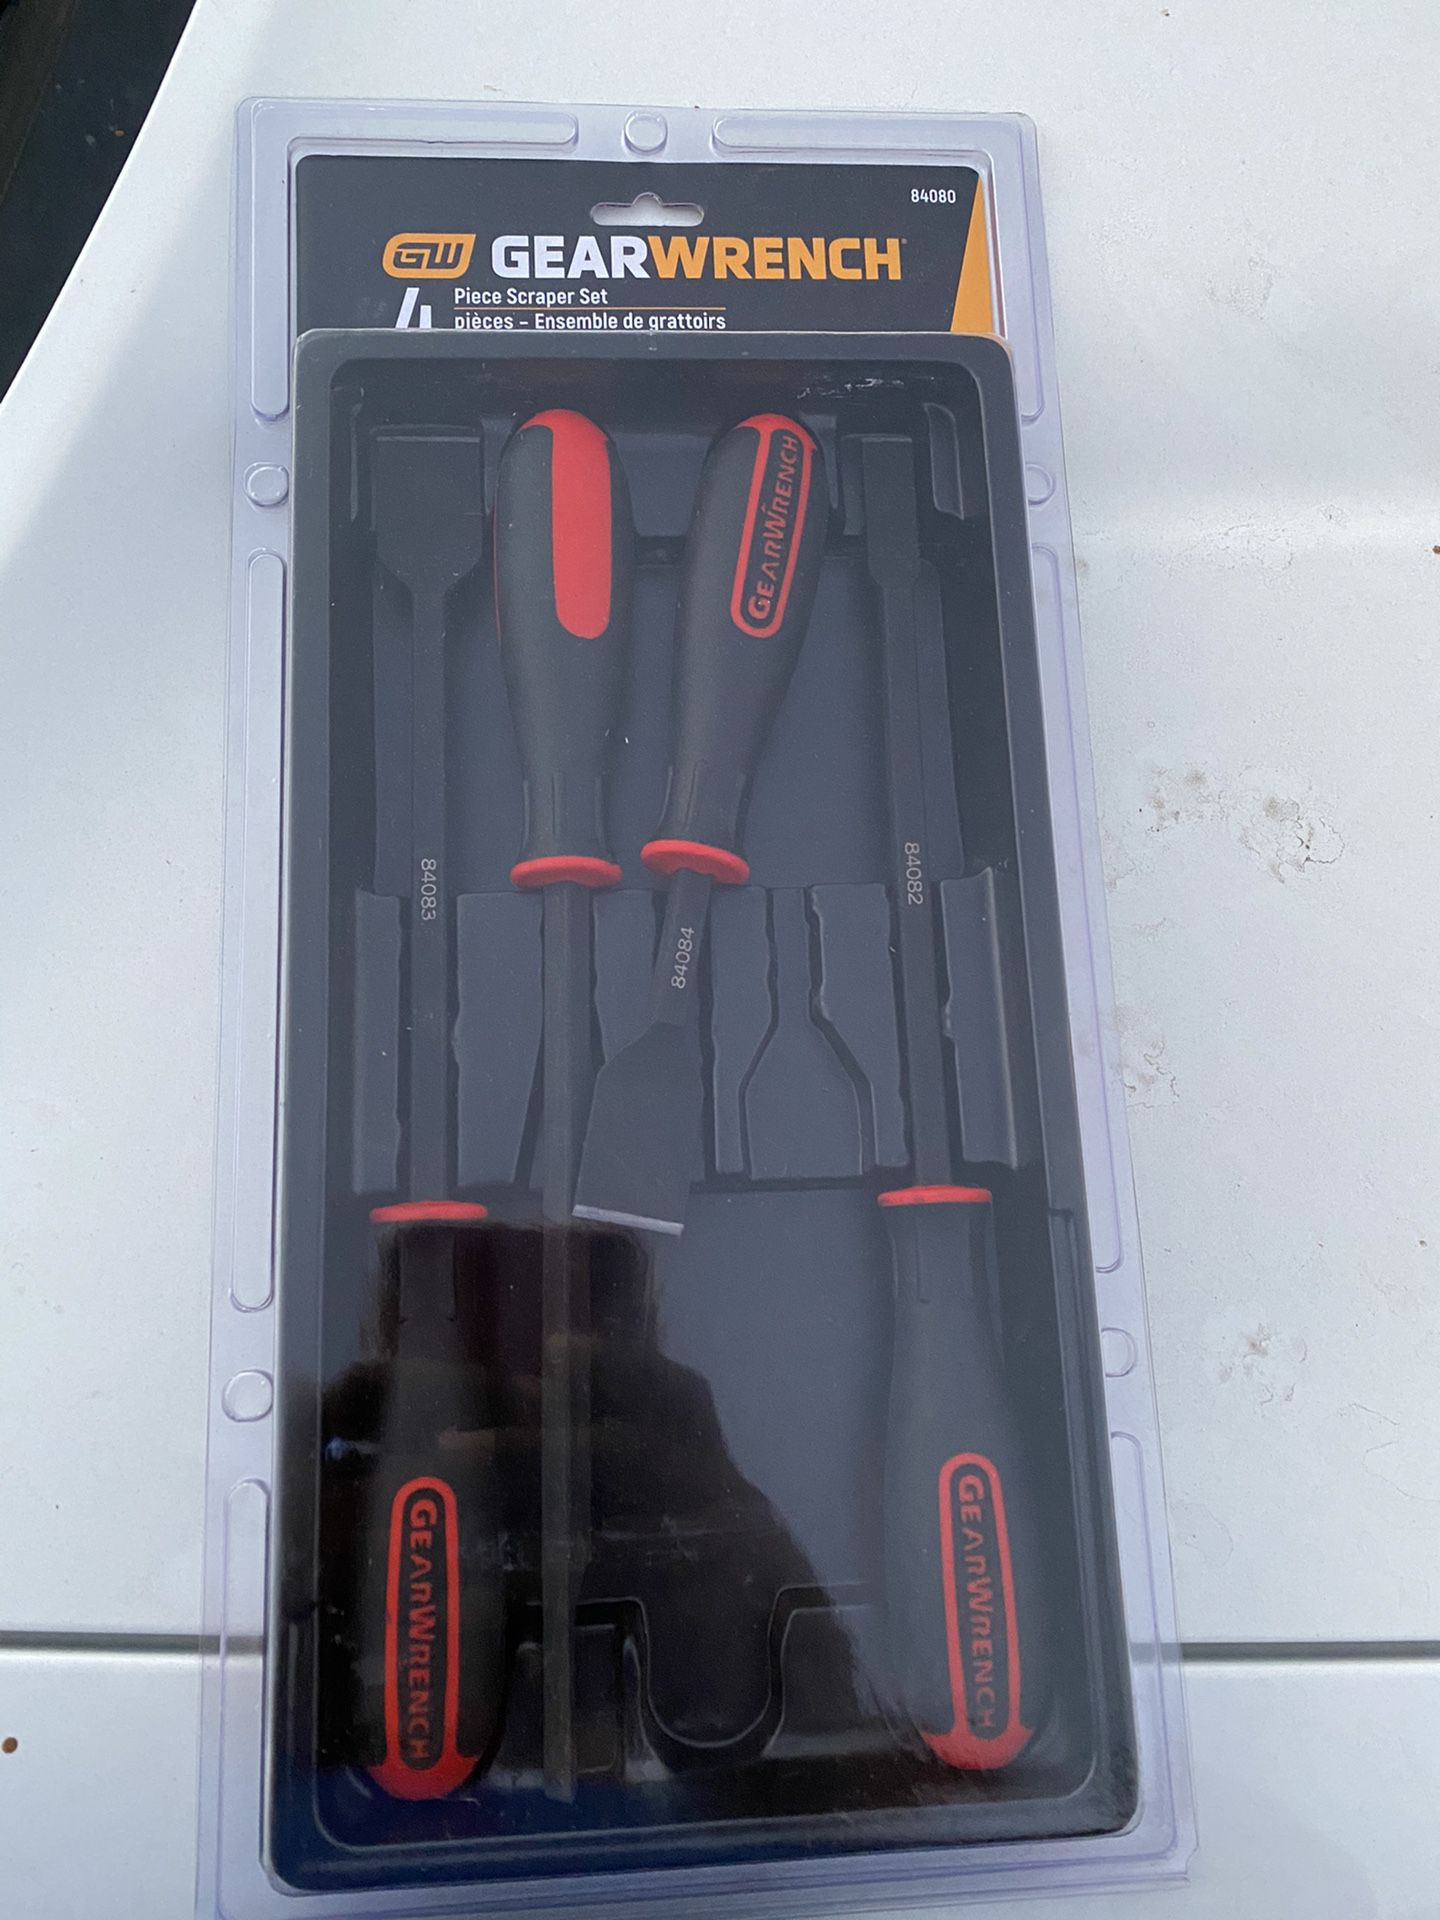 Gear wrench scrapers